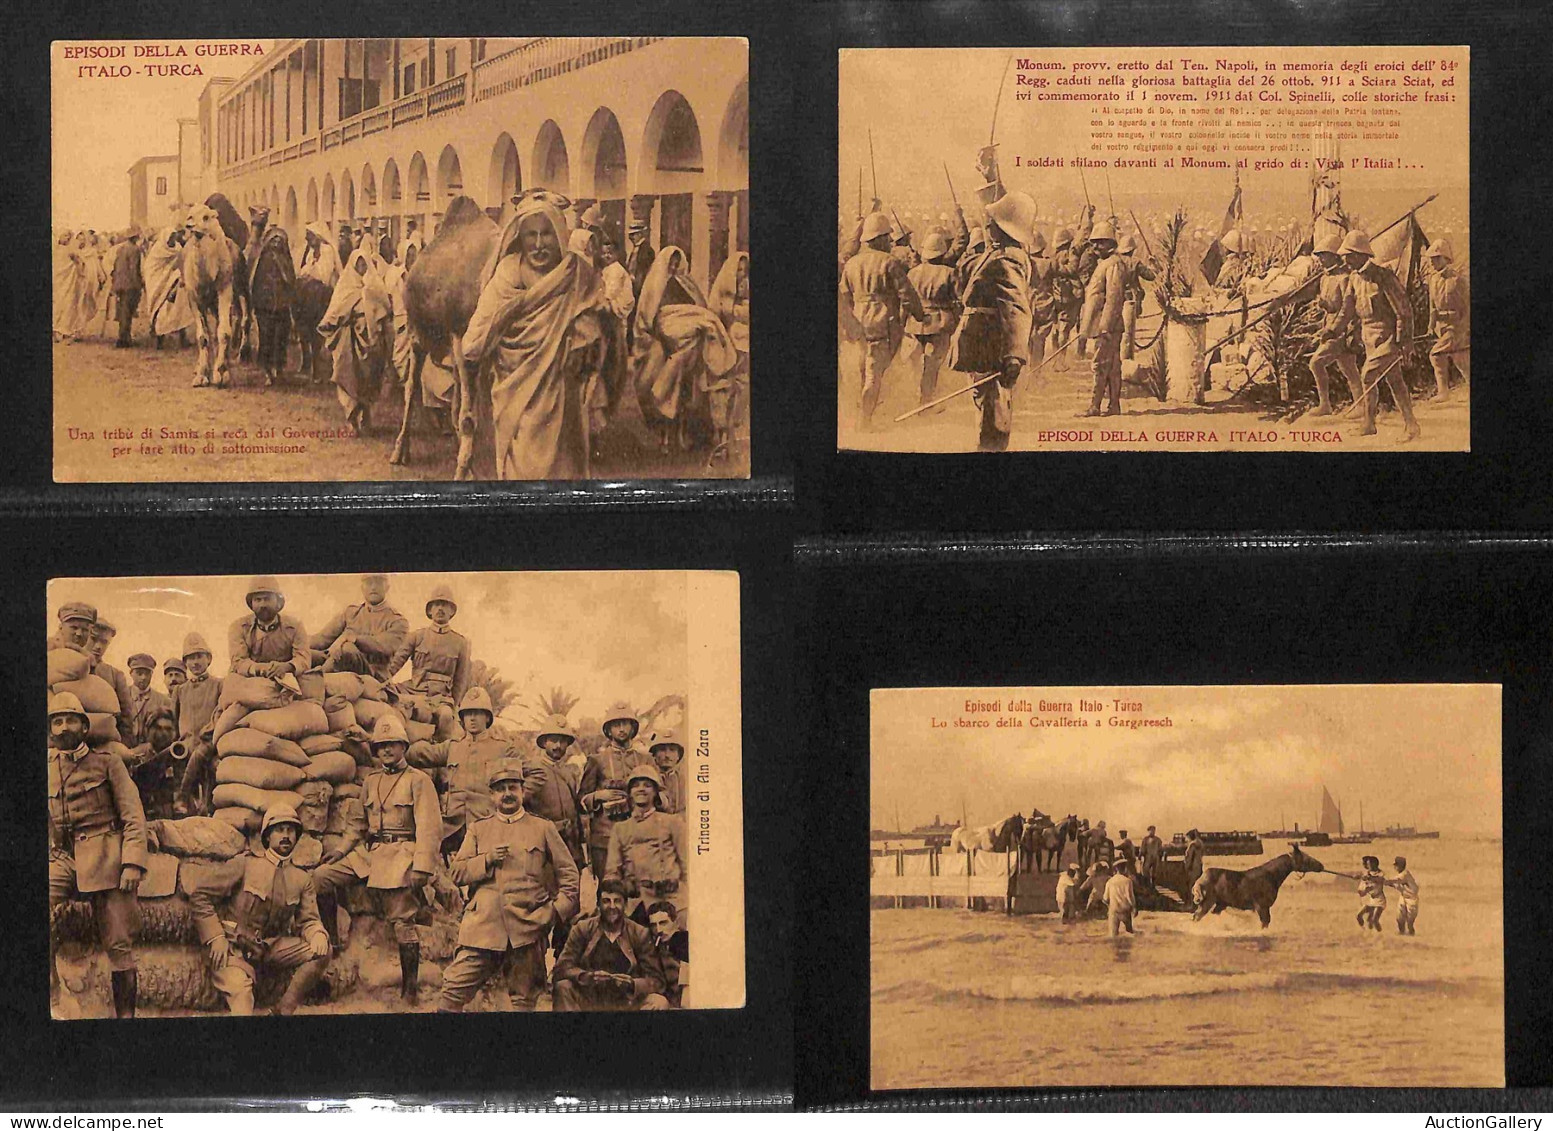 Lotti e Collezioni - Area Italiana  - CARTOLINE - Guerra Italo Turca/Conquista della Libia - 68 cartoline diverse illust